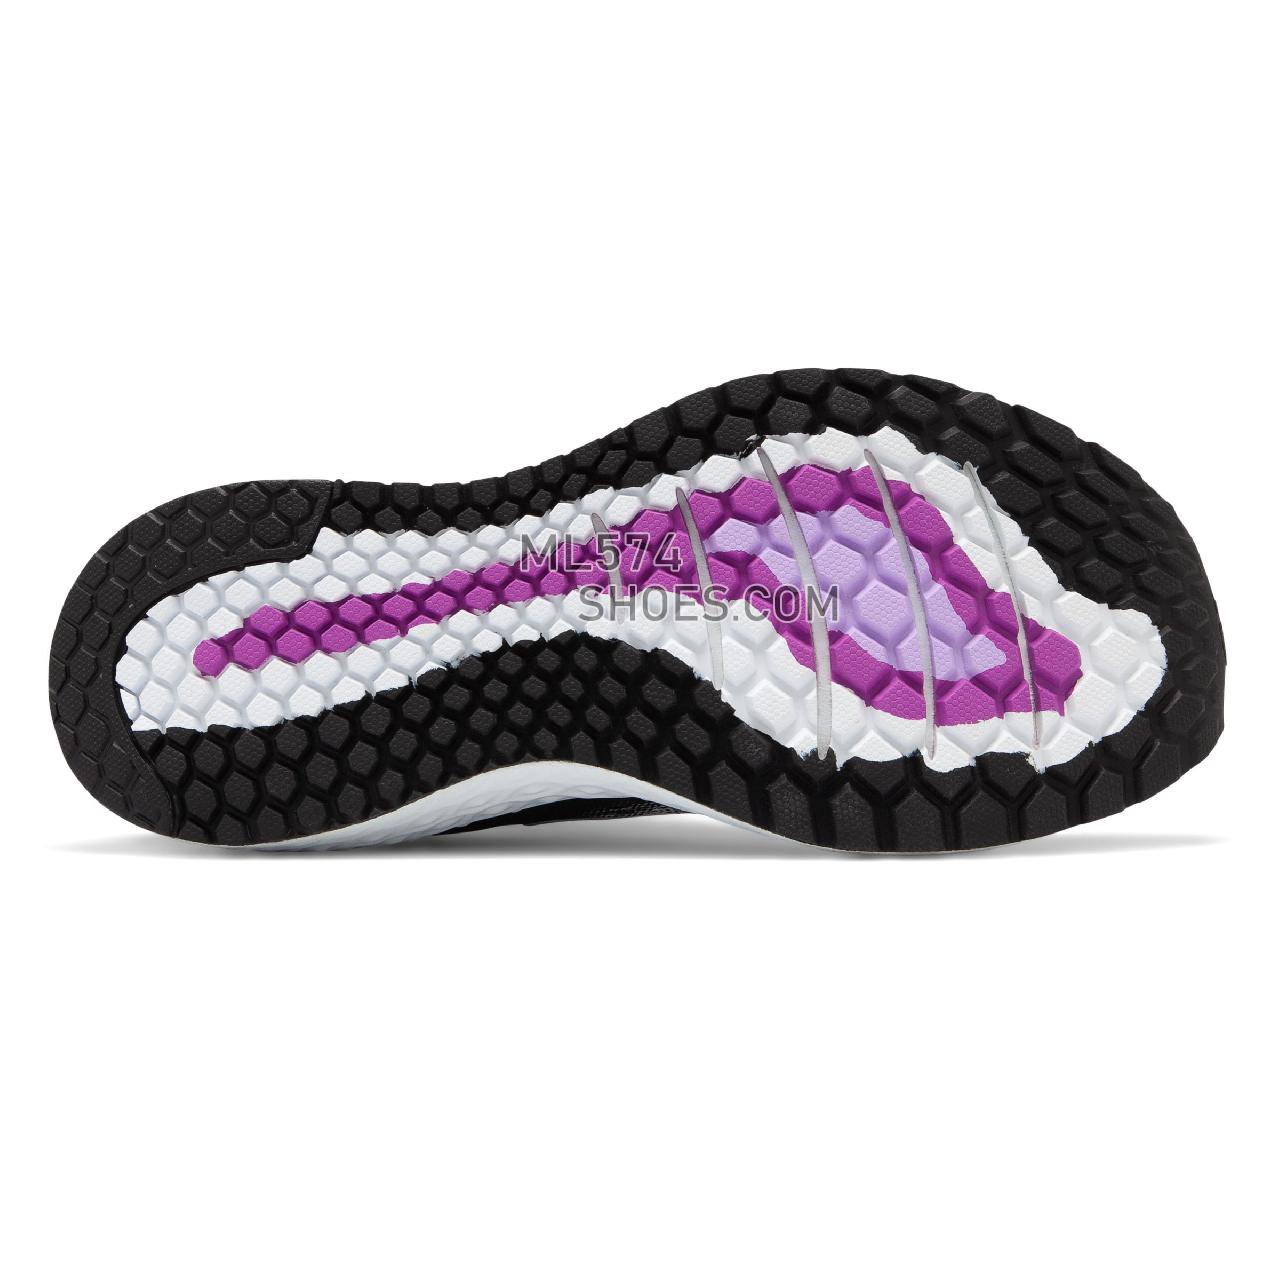 New Balance Fresh Foam 1080v9 - Women's Fresh Foam 1080v9 Running W1080-V9 - White with Black and Voltage Violet - W1080WB9